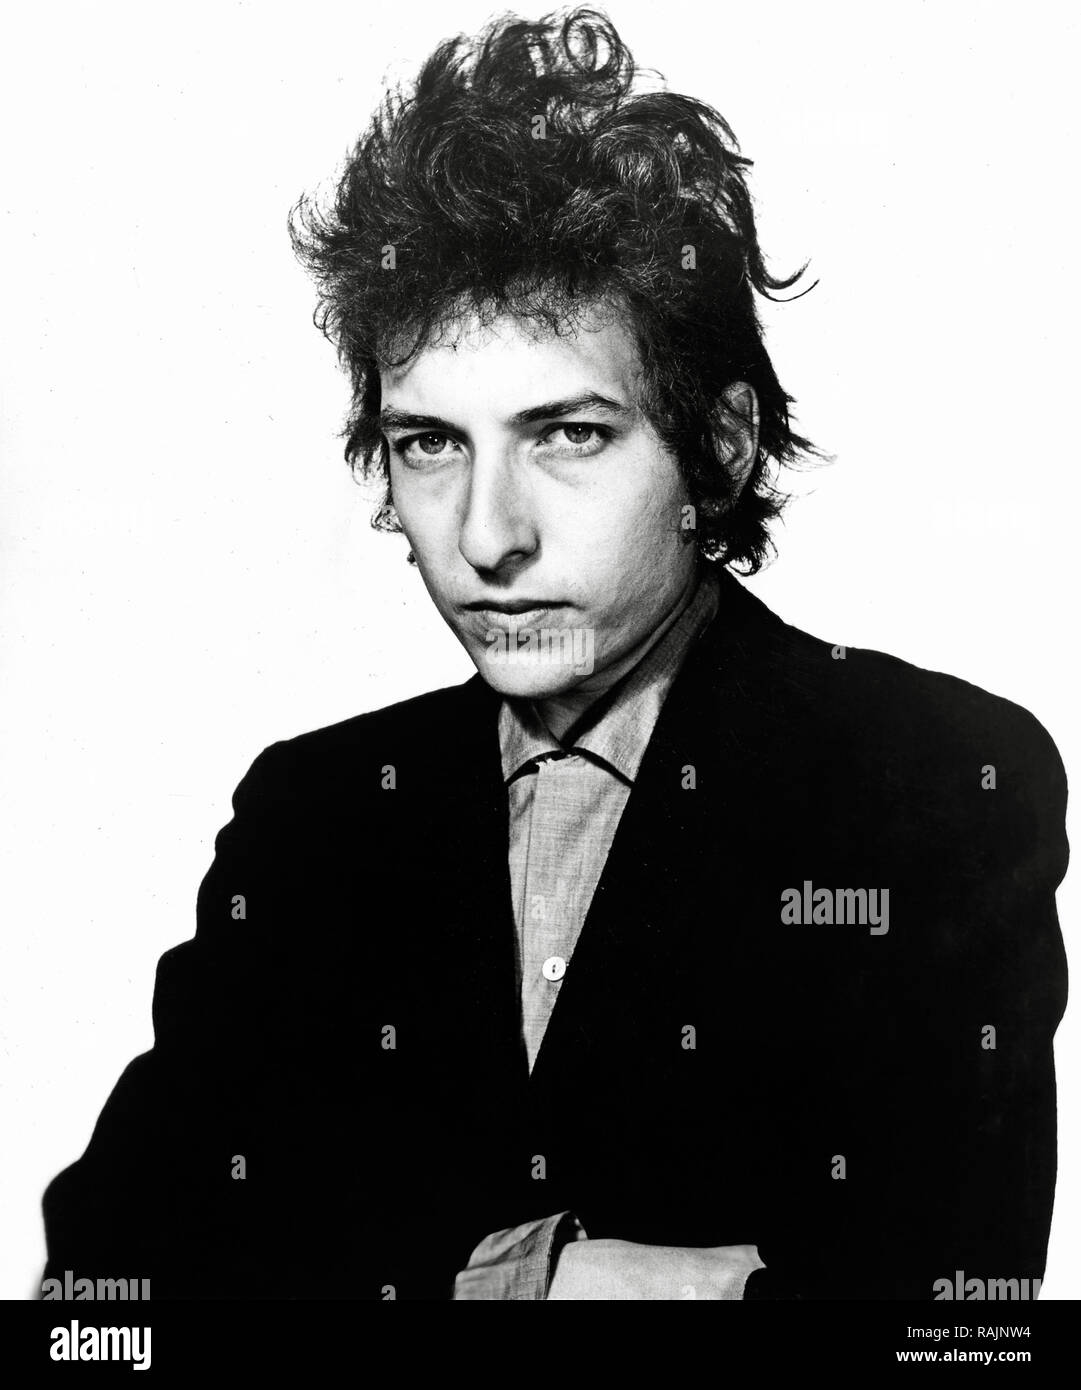 Pubblicità fotografia di Bob Dylan, circa 1968 Riferimento File # 33636 943THA Foto Stock